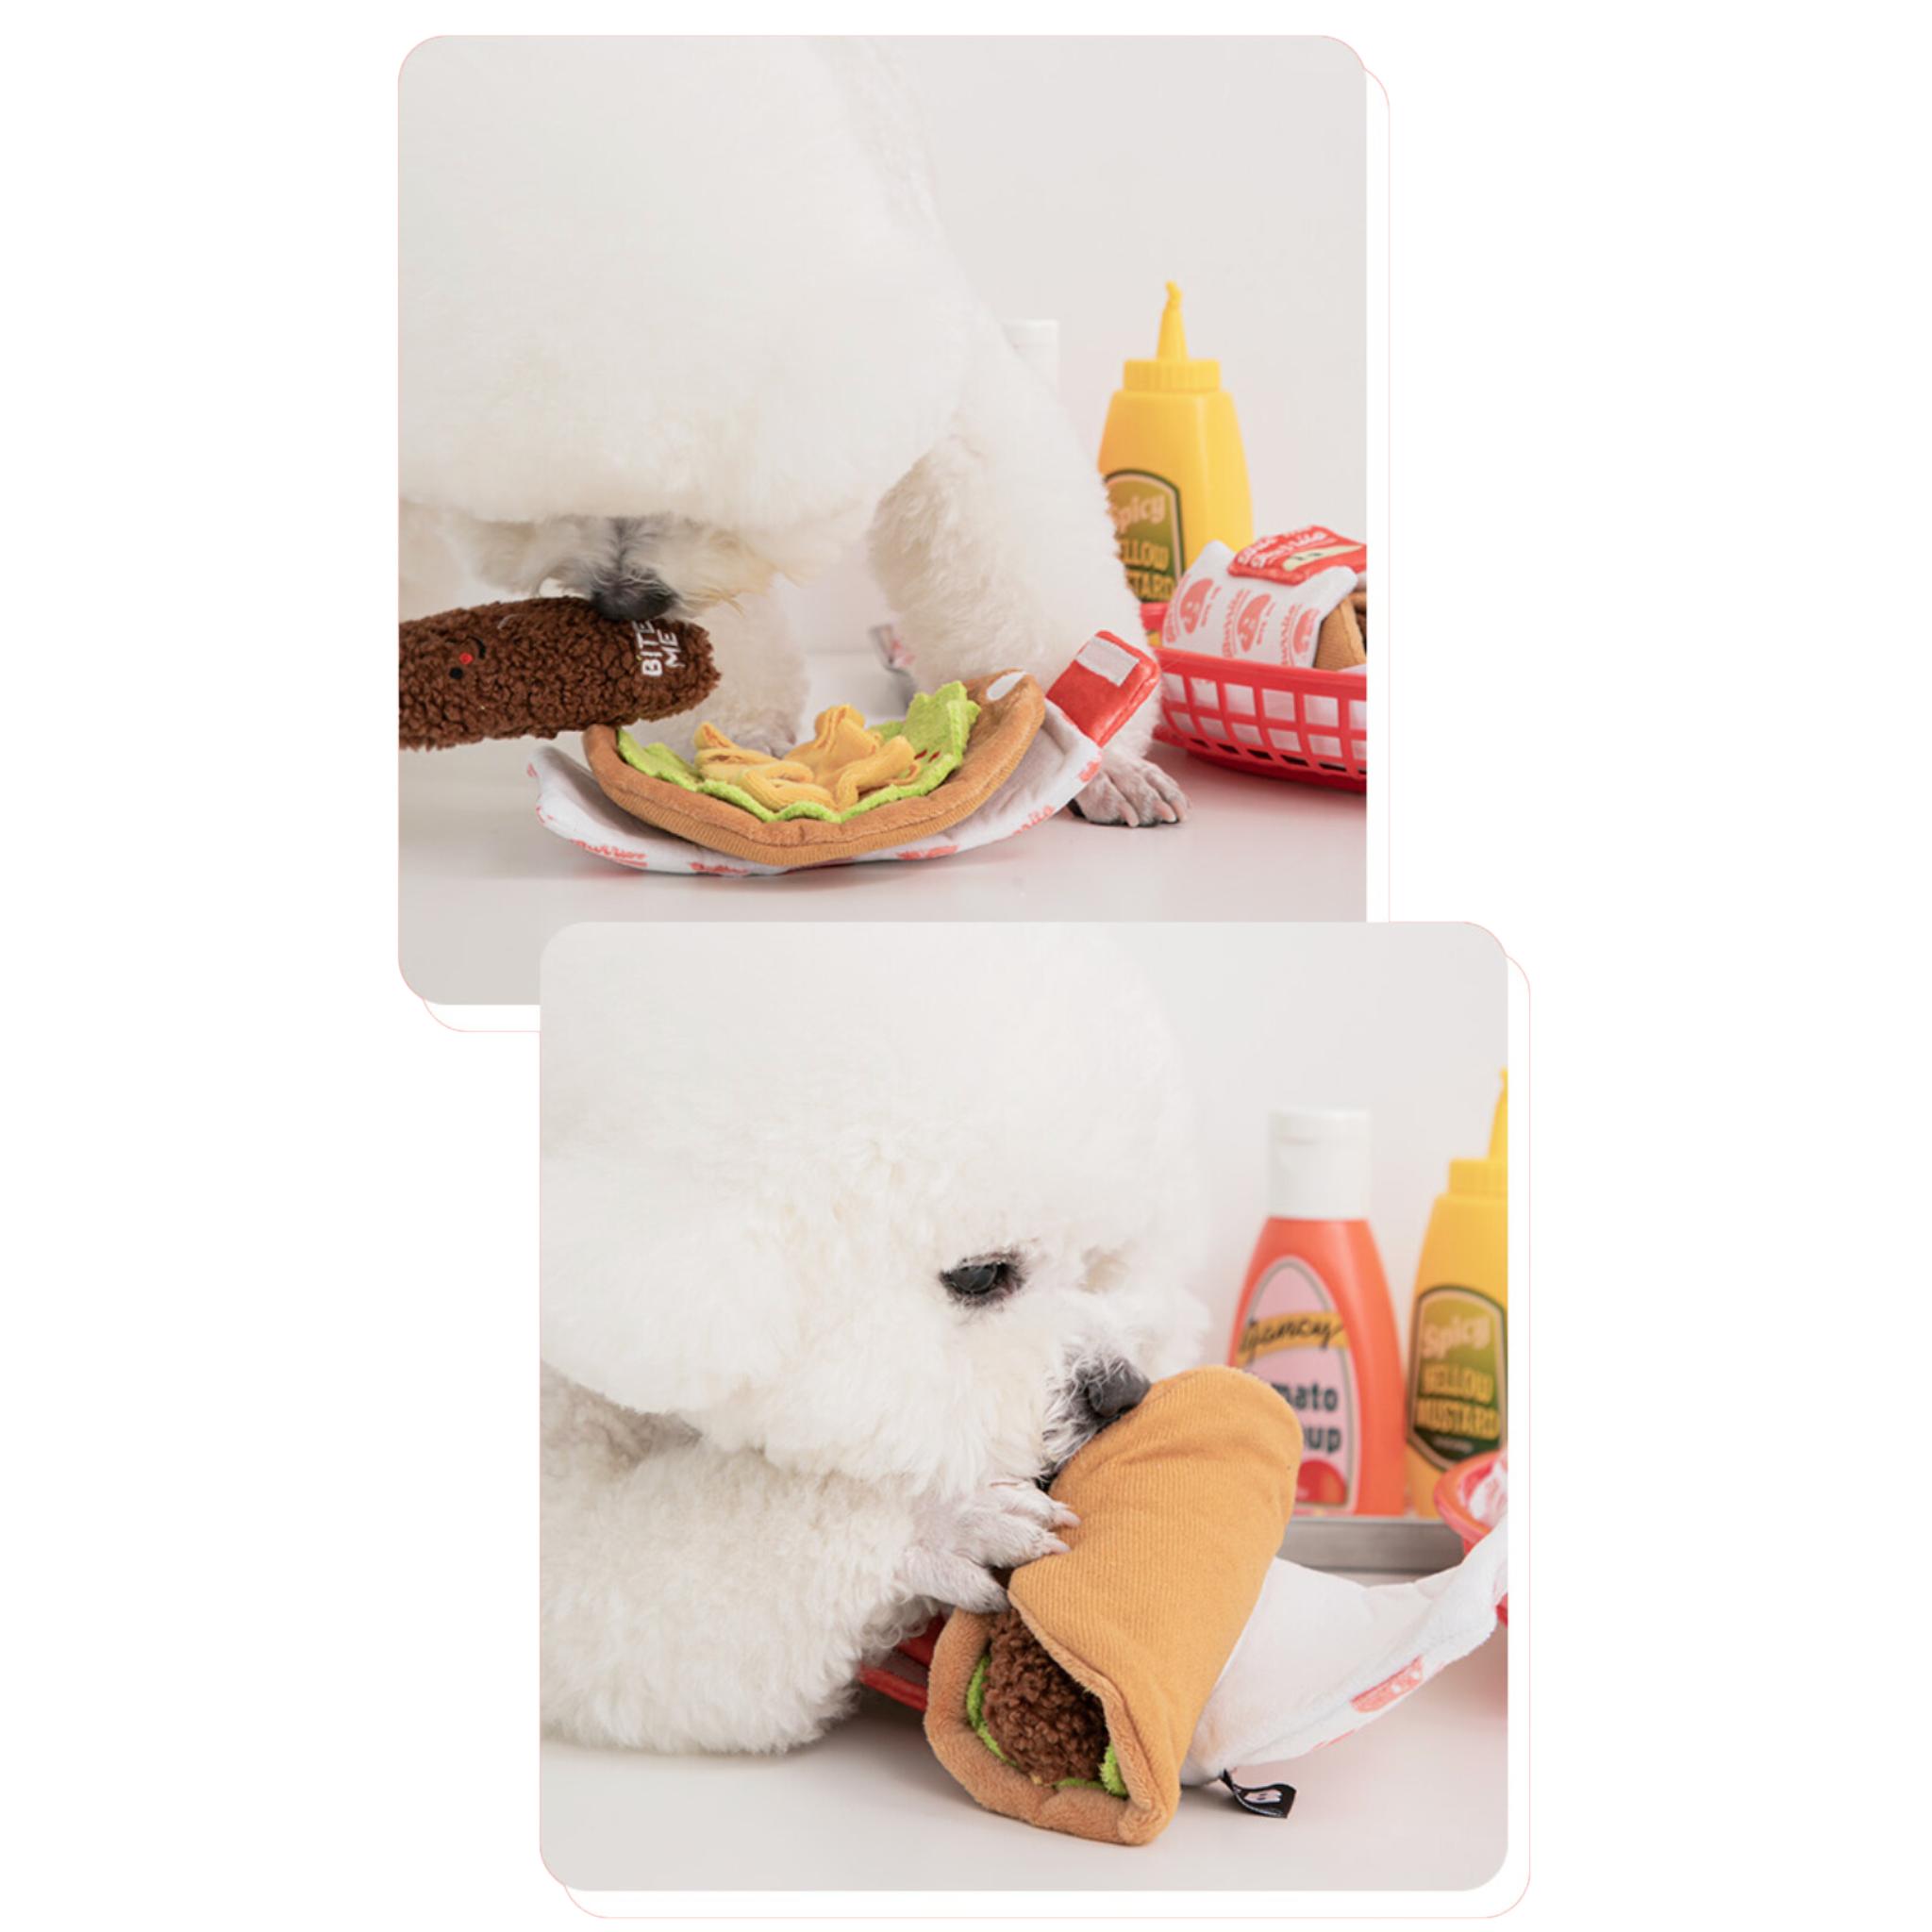 Burrito Nosework Toy